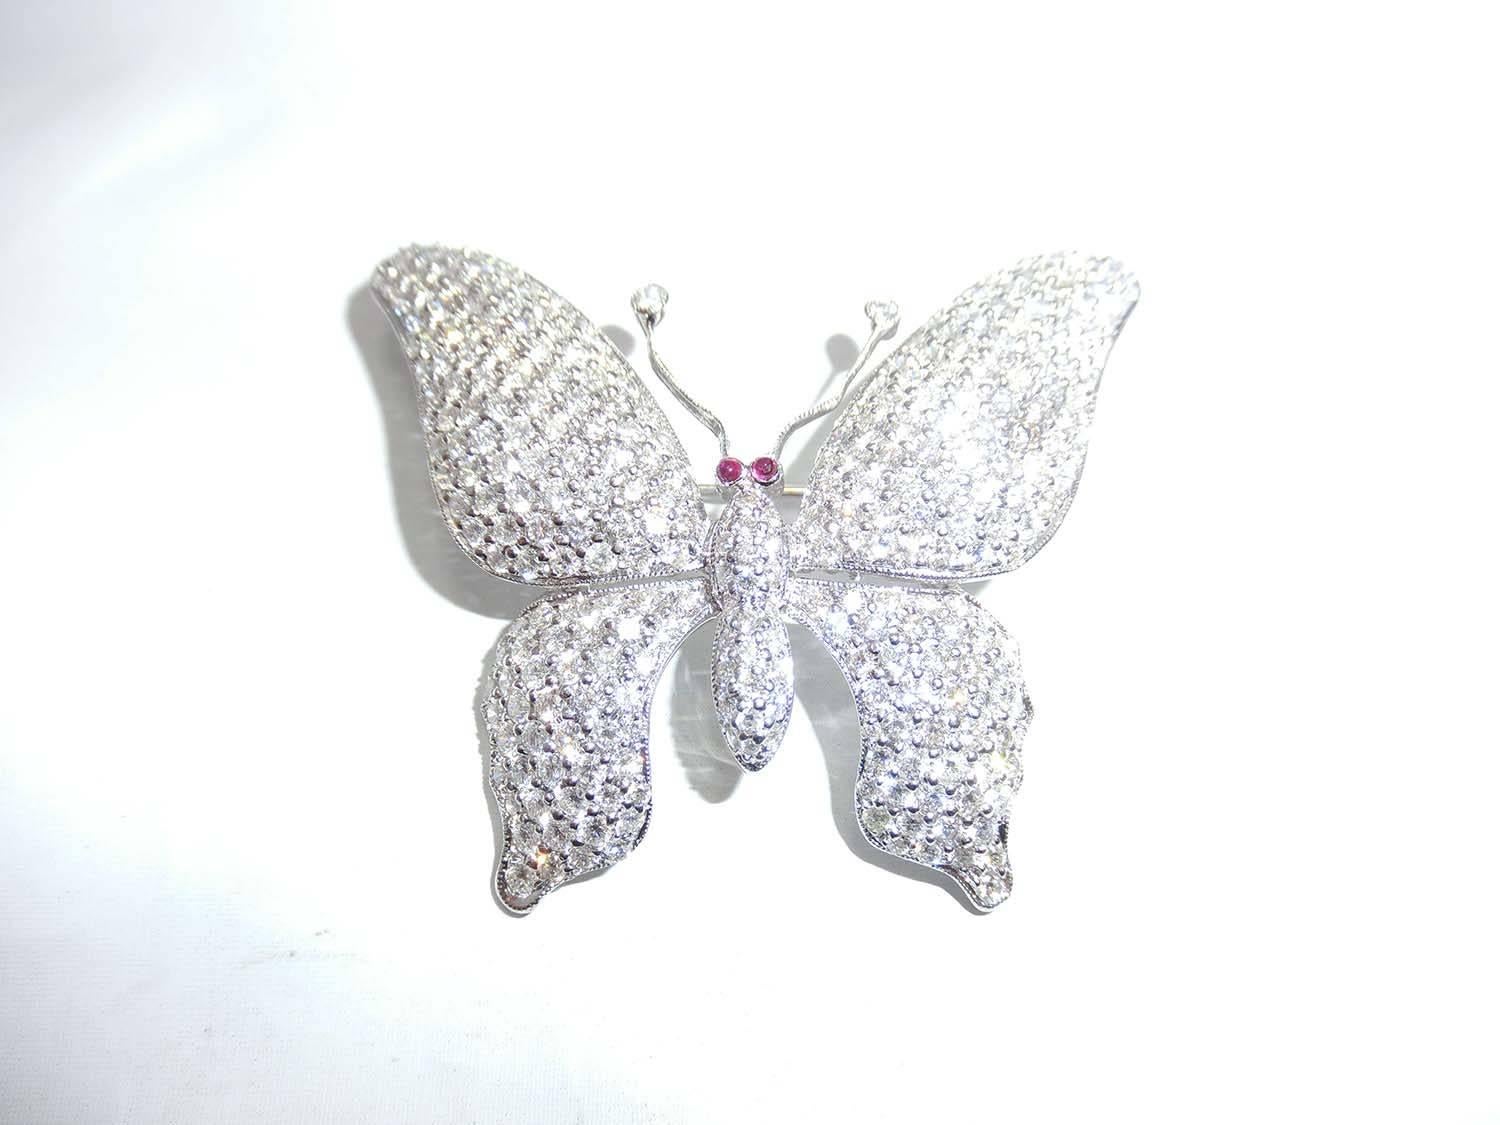 Diamant Schmetterling Brosche Ein niedlicher Schmetterling, dass der Flügel bewegen können, verwenden Sie Diamant 5,44 ct H Vs Qualität